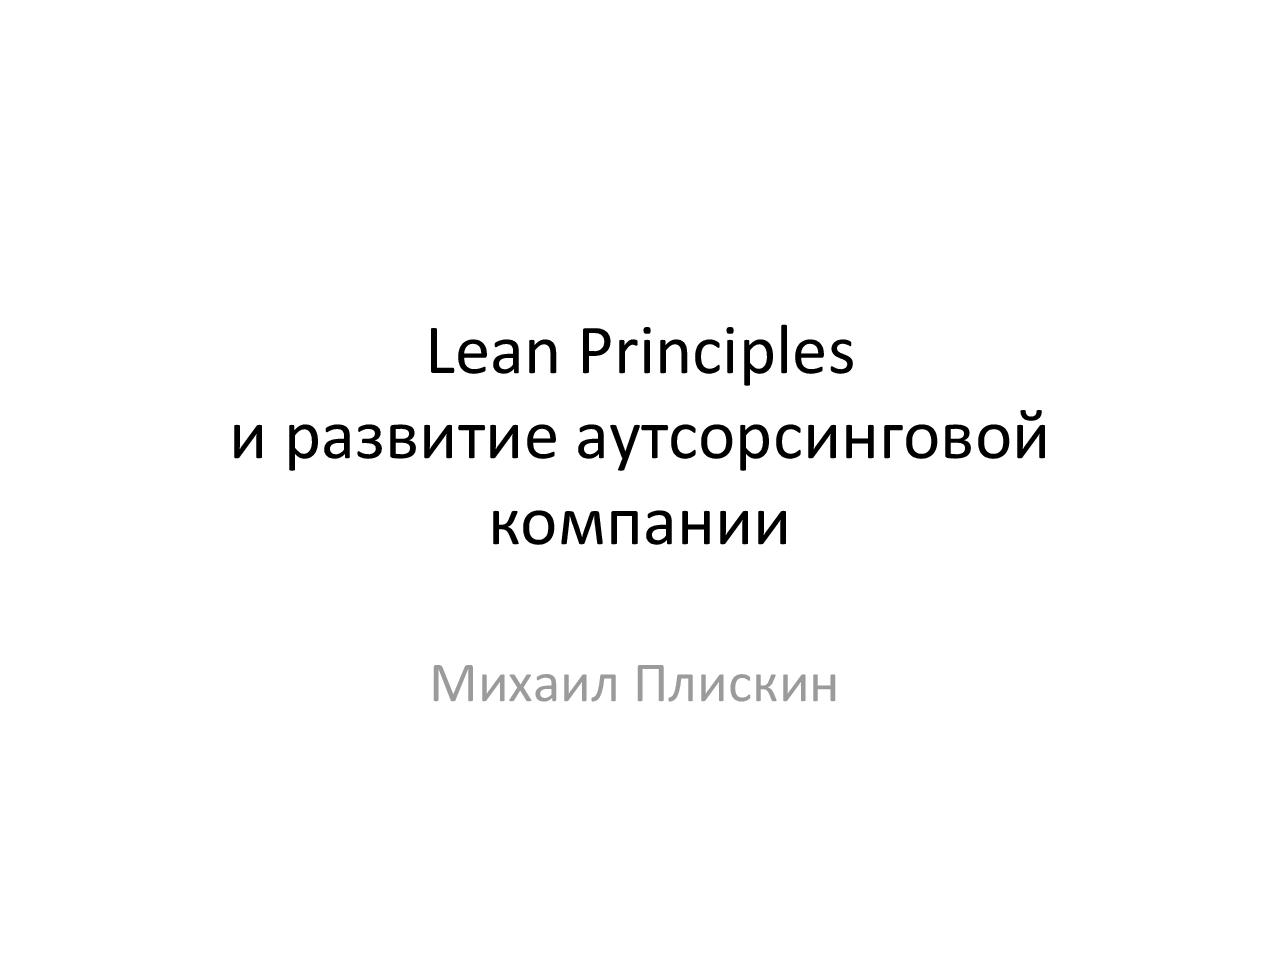 Принципы Lean и развитие аутсорсинговой компании (Михаил Плискин, AgileDays-2011).pdf